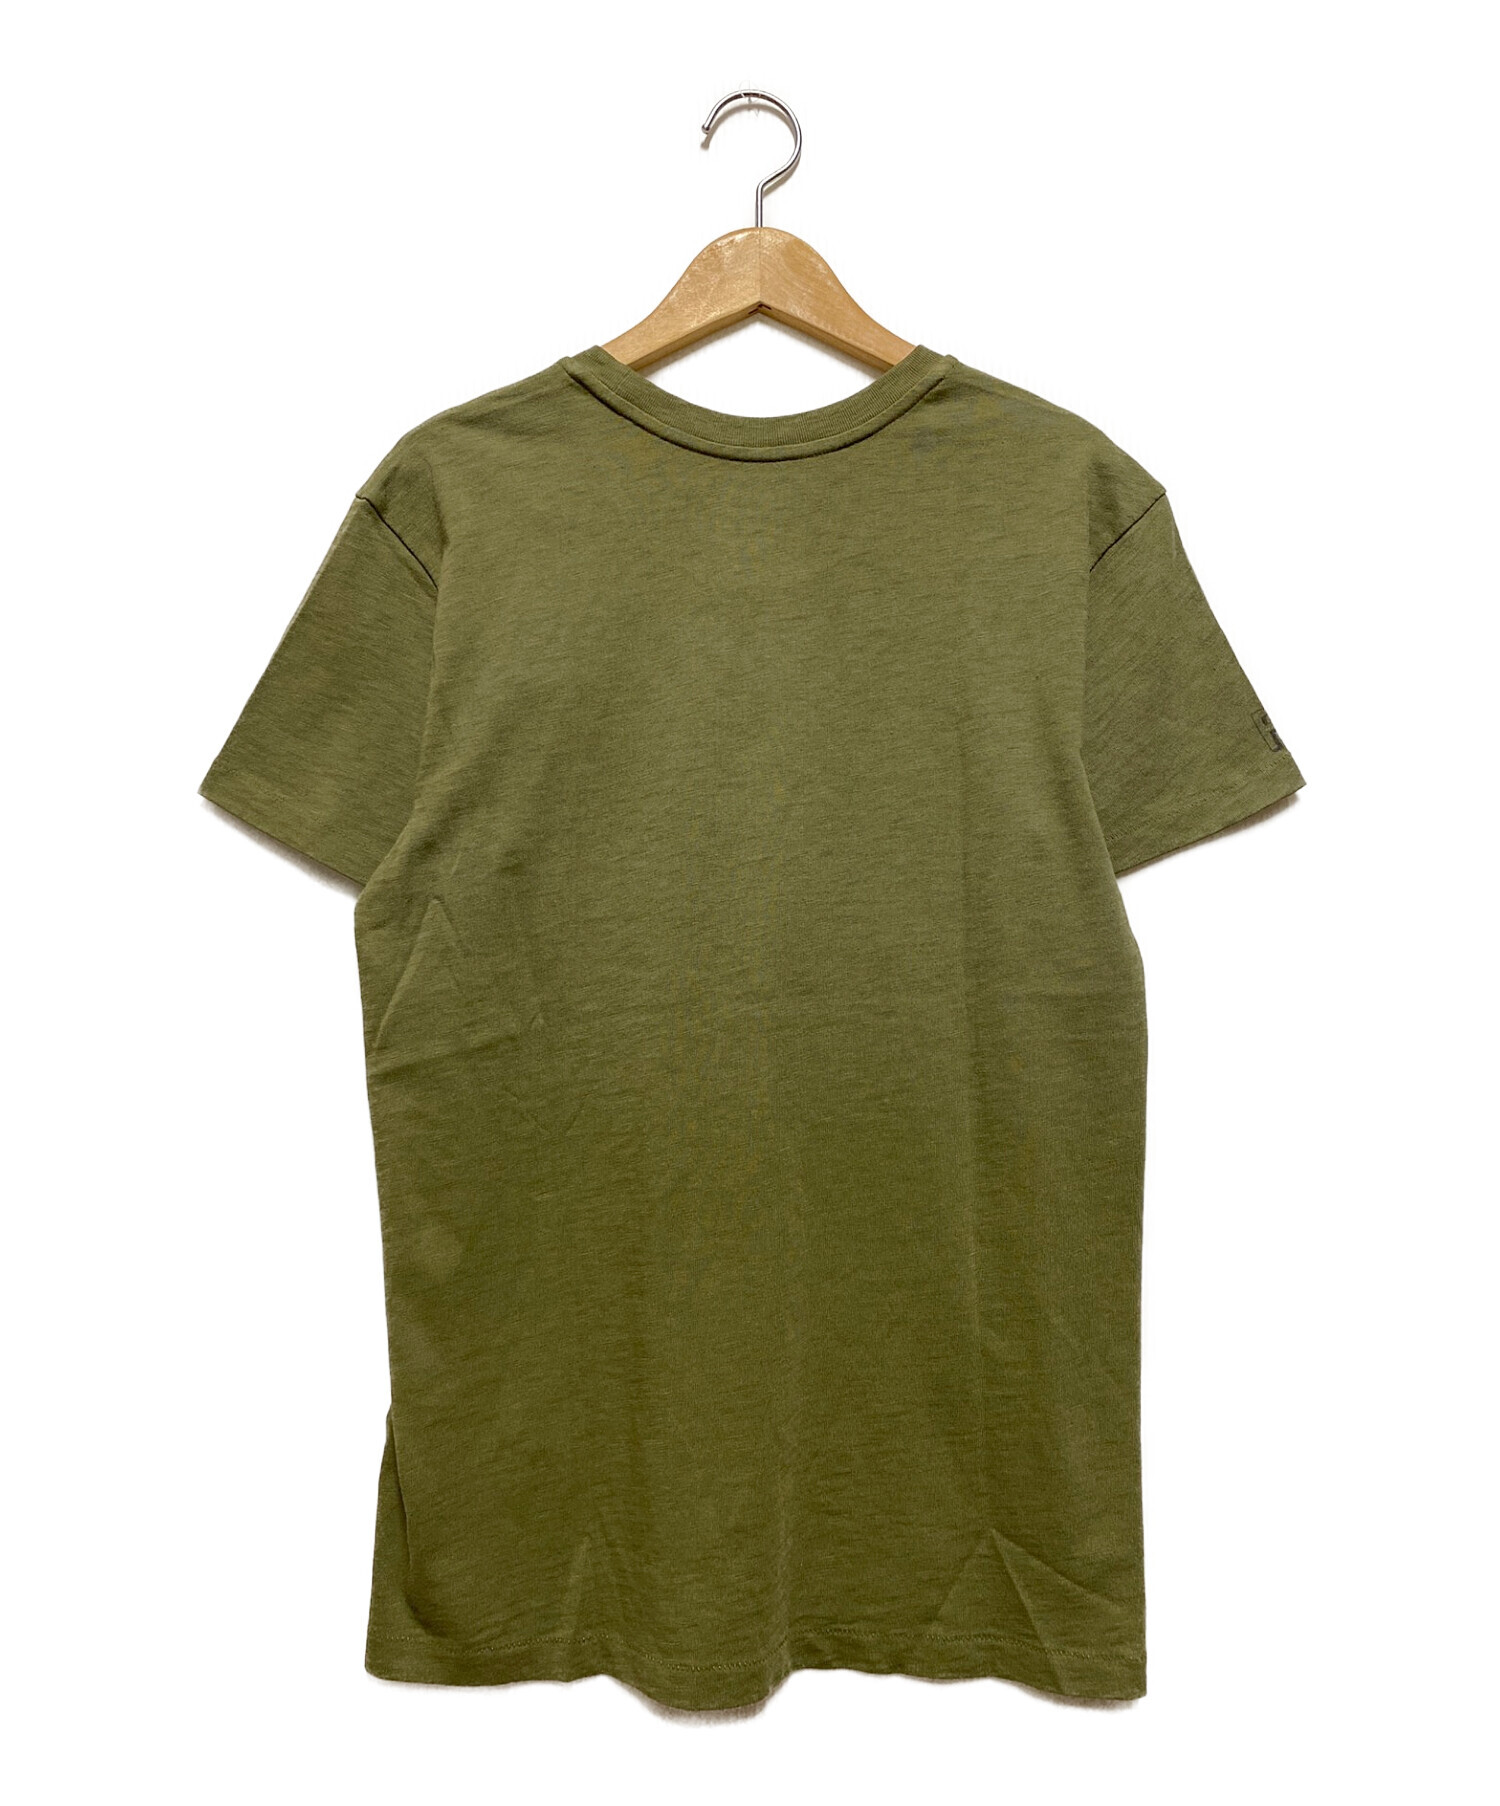 ポロラルフローレン Tシャツ 星条旗 XSサイズ - Tシャツ/カットソー